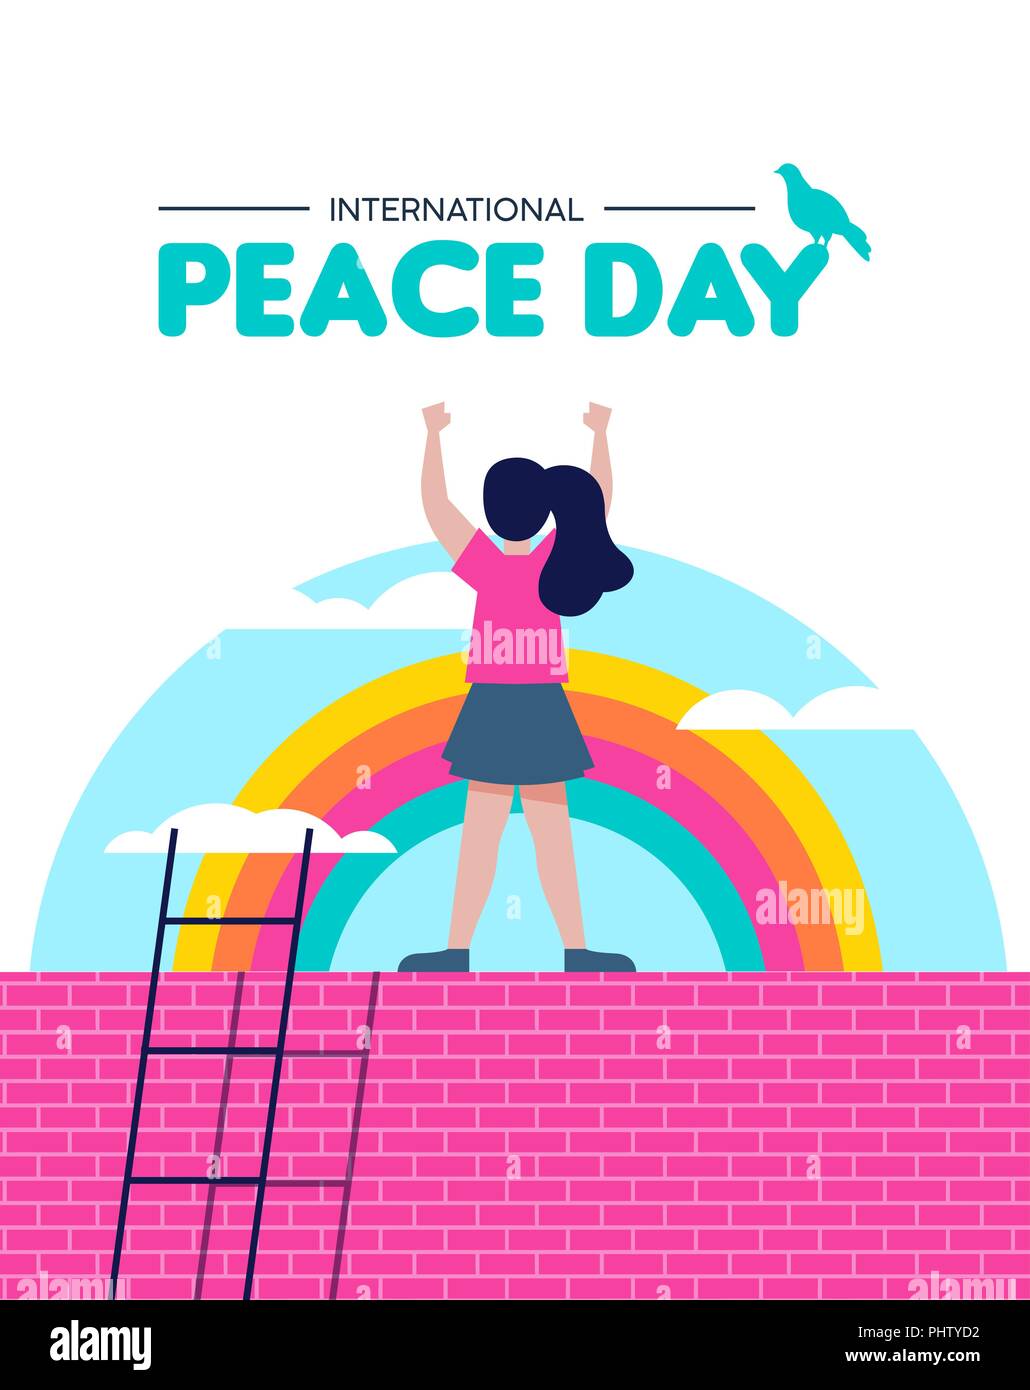 Internationaler Friedenstag Illustration, Welt kinder Freiheit Konzept. Kostenlos Mädchen feiern auf Regenbogen Himmel Hintergrund. EPS 10 Vektor. Stock Vektor